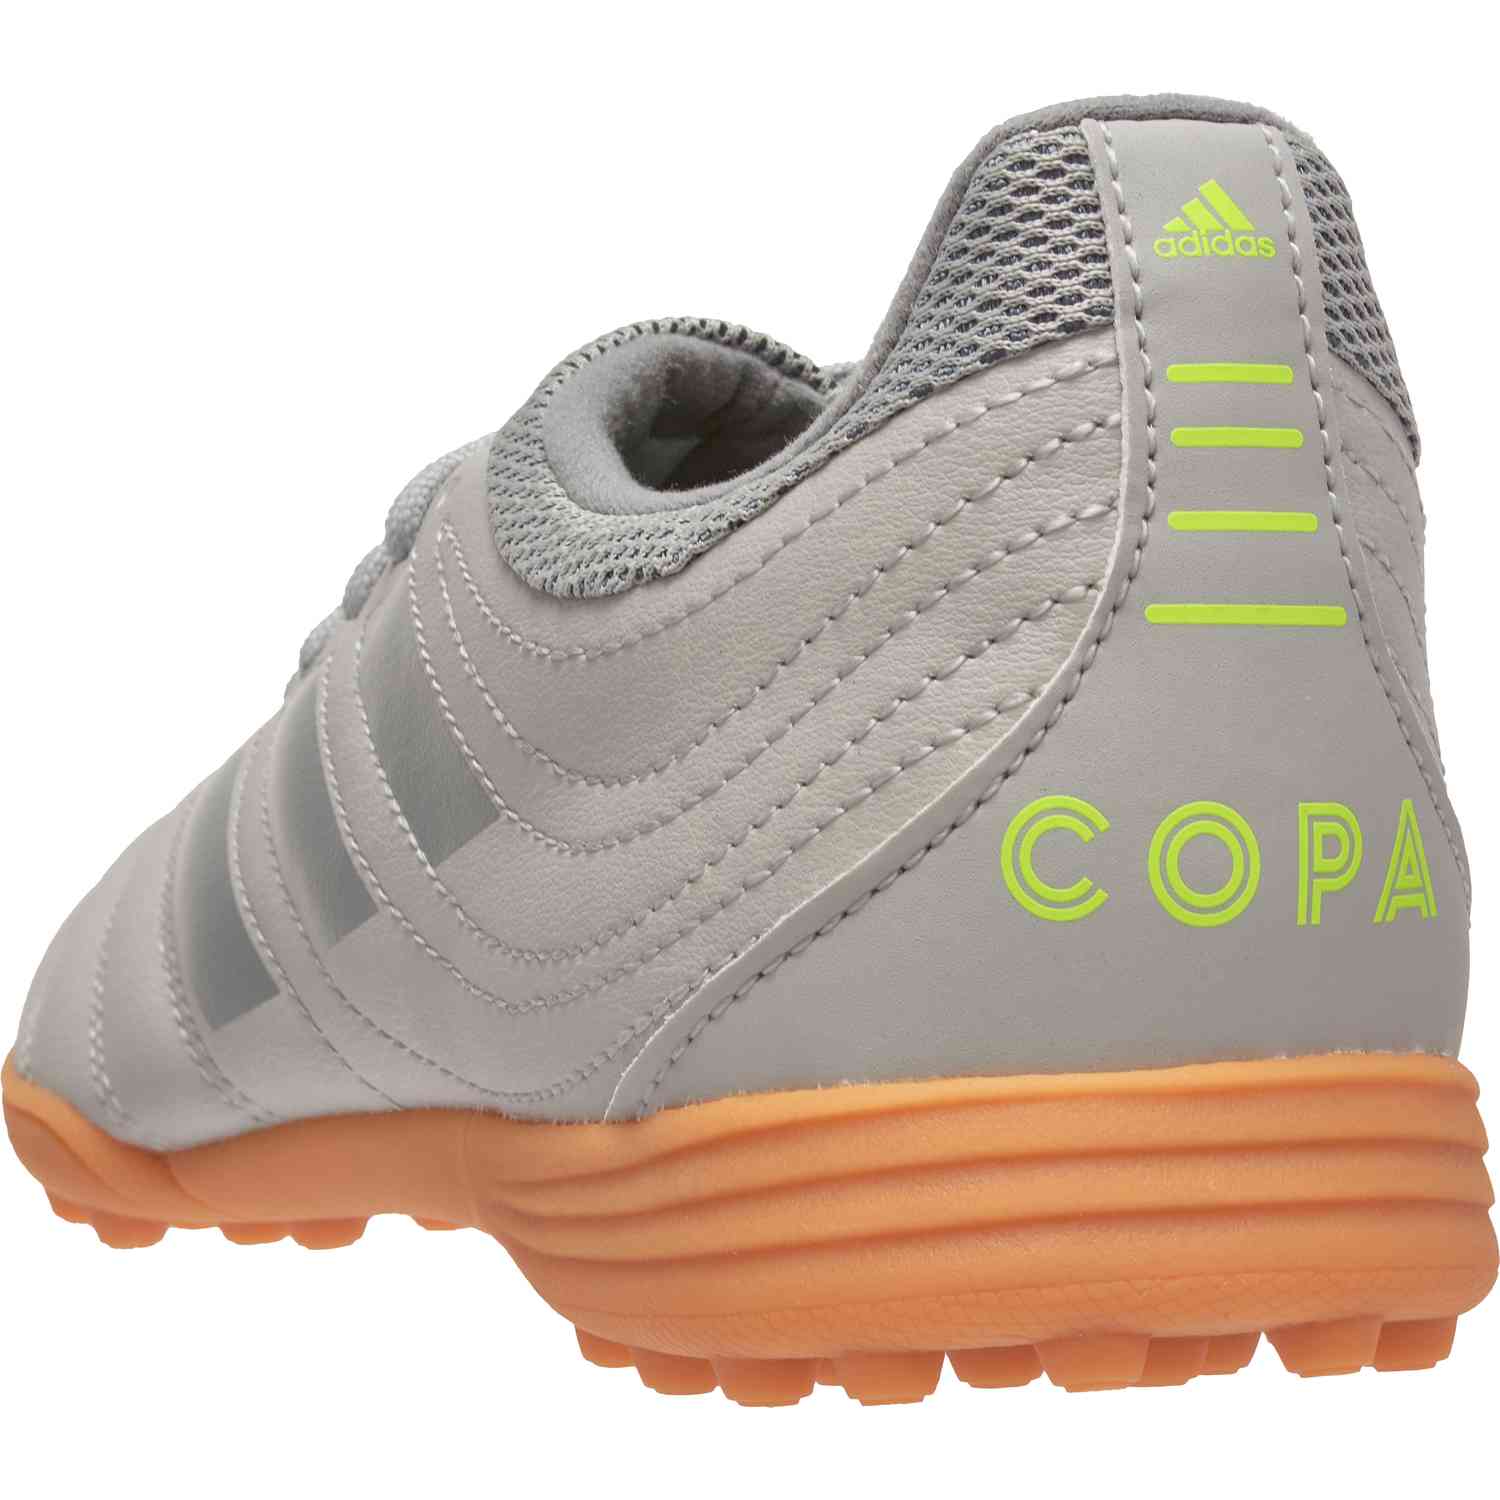 الدهون Kids adidas COPA 20.3 TF - Encryption Pack - SoccerPro الدهون